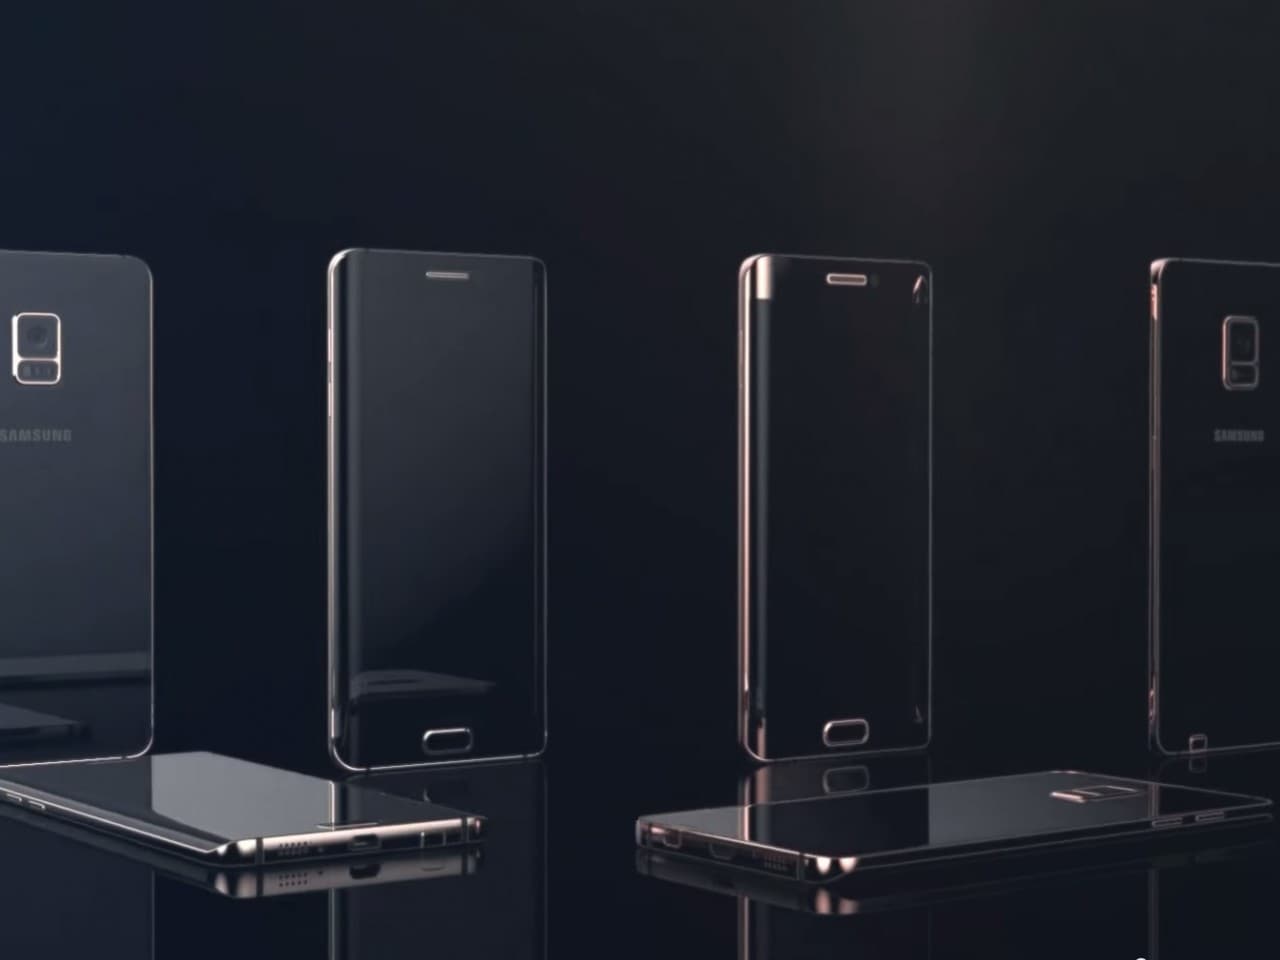 Galaxy Note 5 edge potrebbe essere un S6 edge ingrandito, senza S Pen